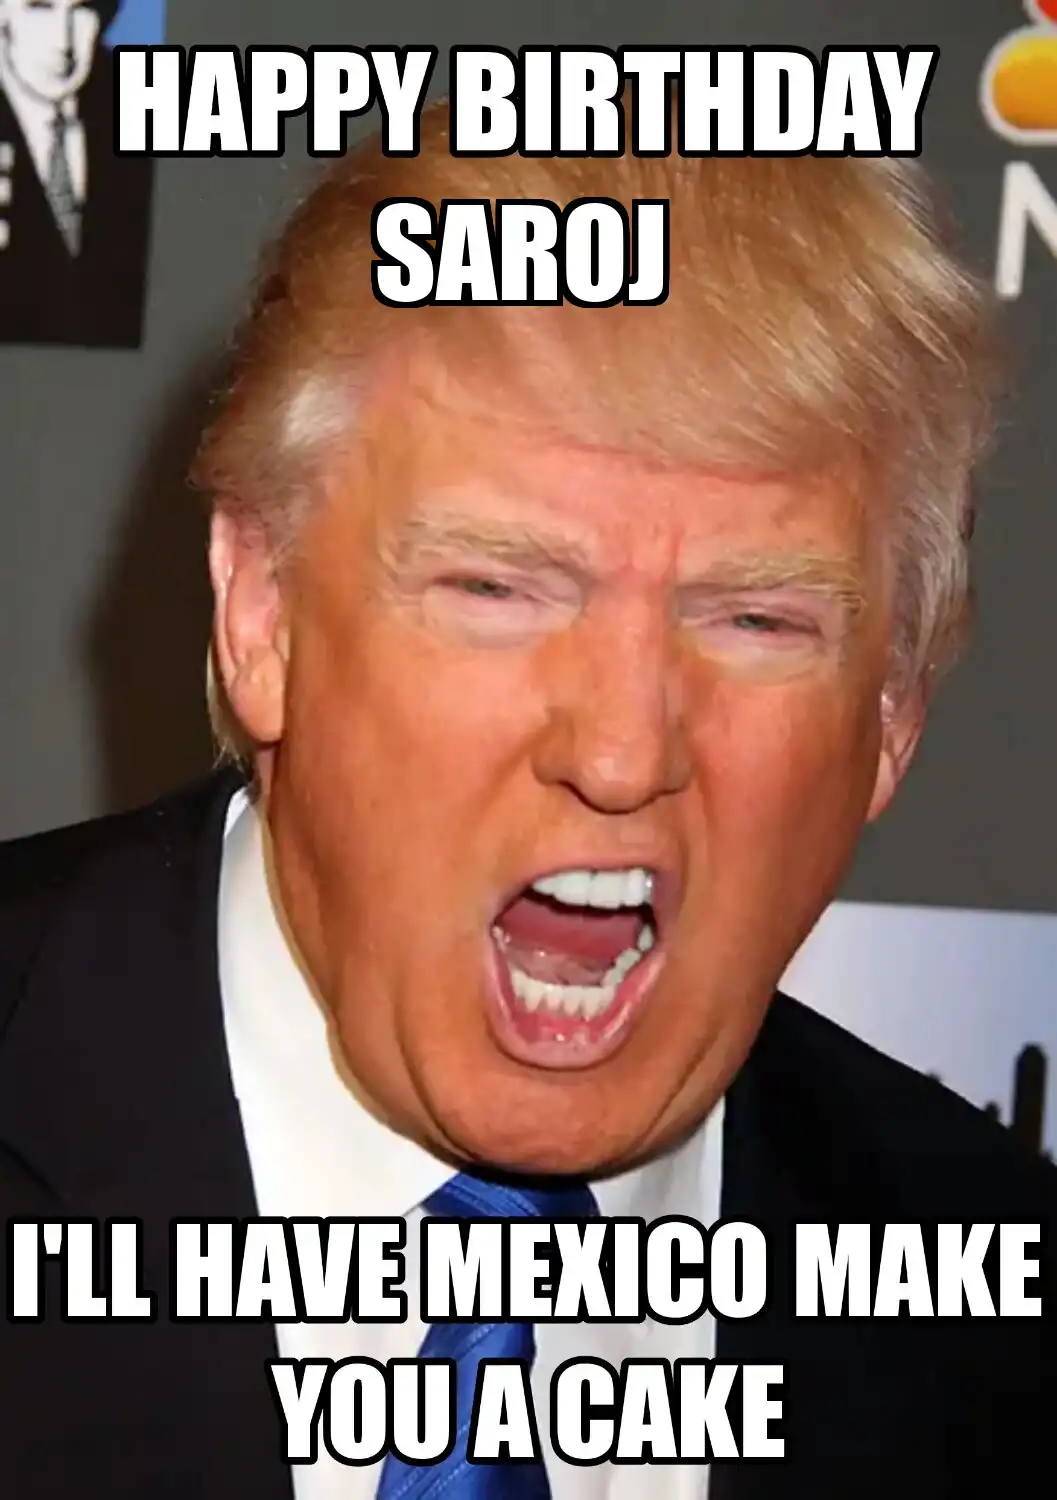 Happy Birthday Saroj Mexico Make You A Cake Meme